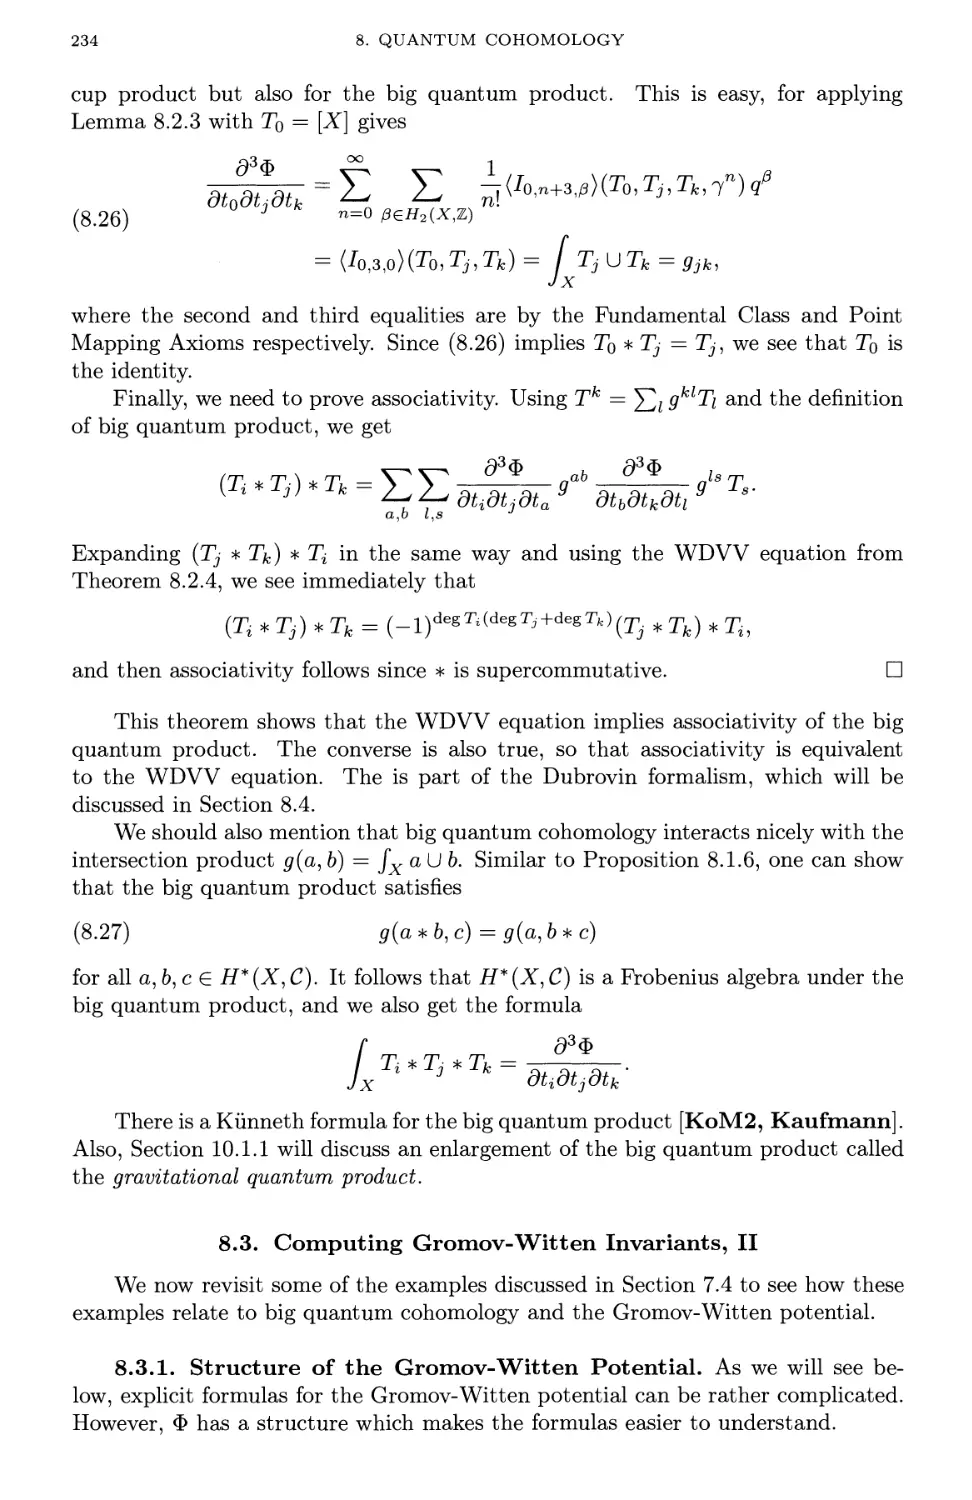 8.3. Computing Gromov-Witten Invariants, II